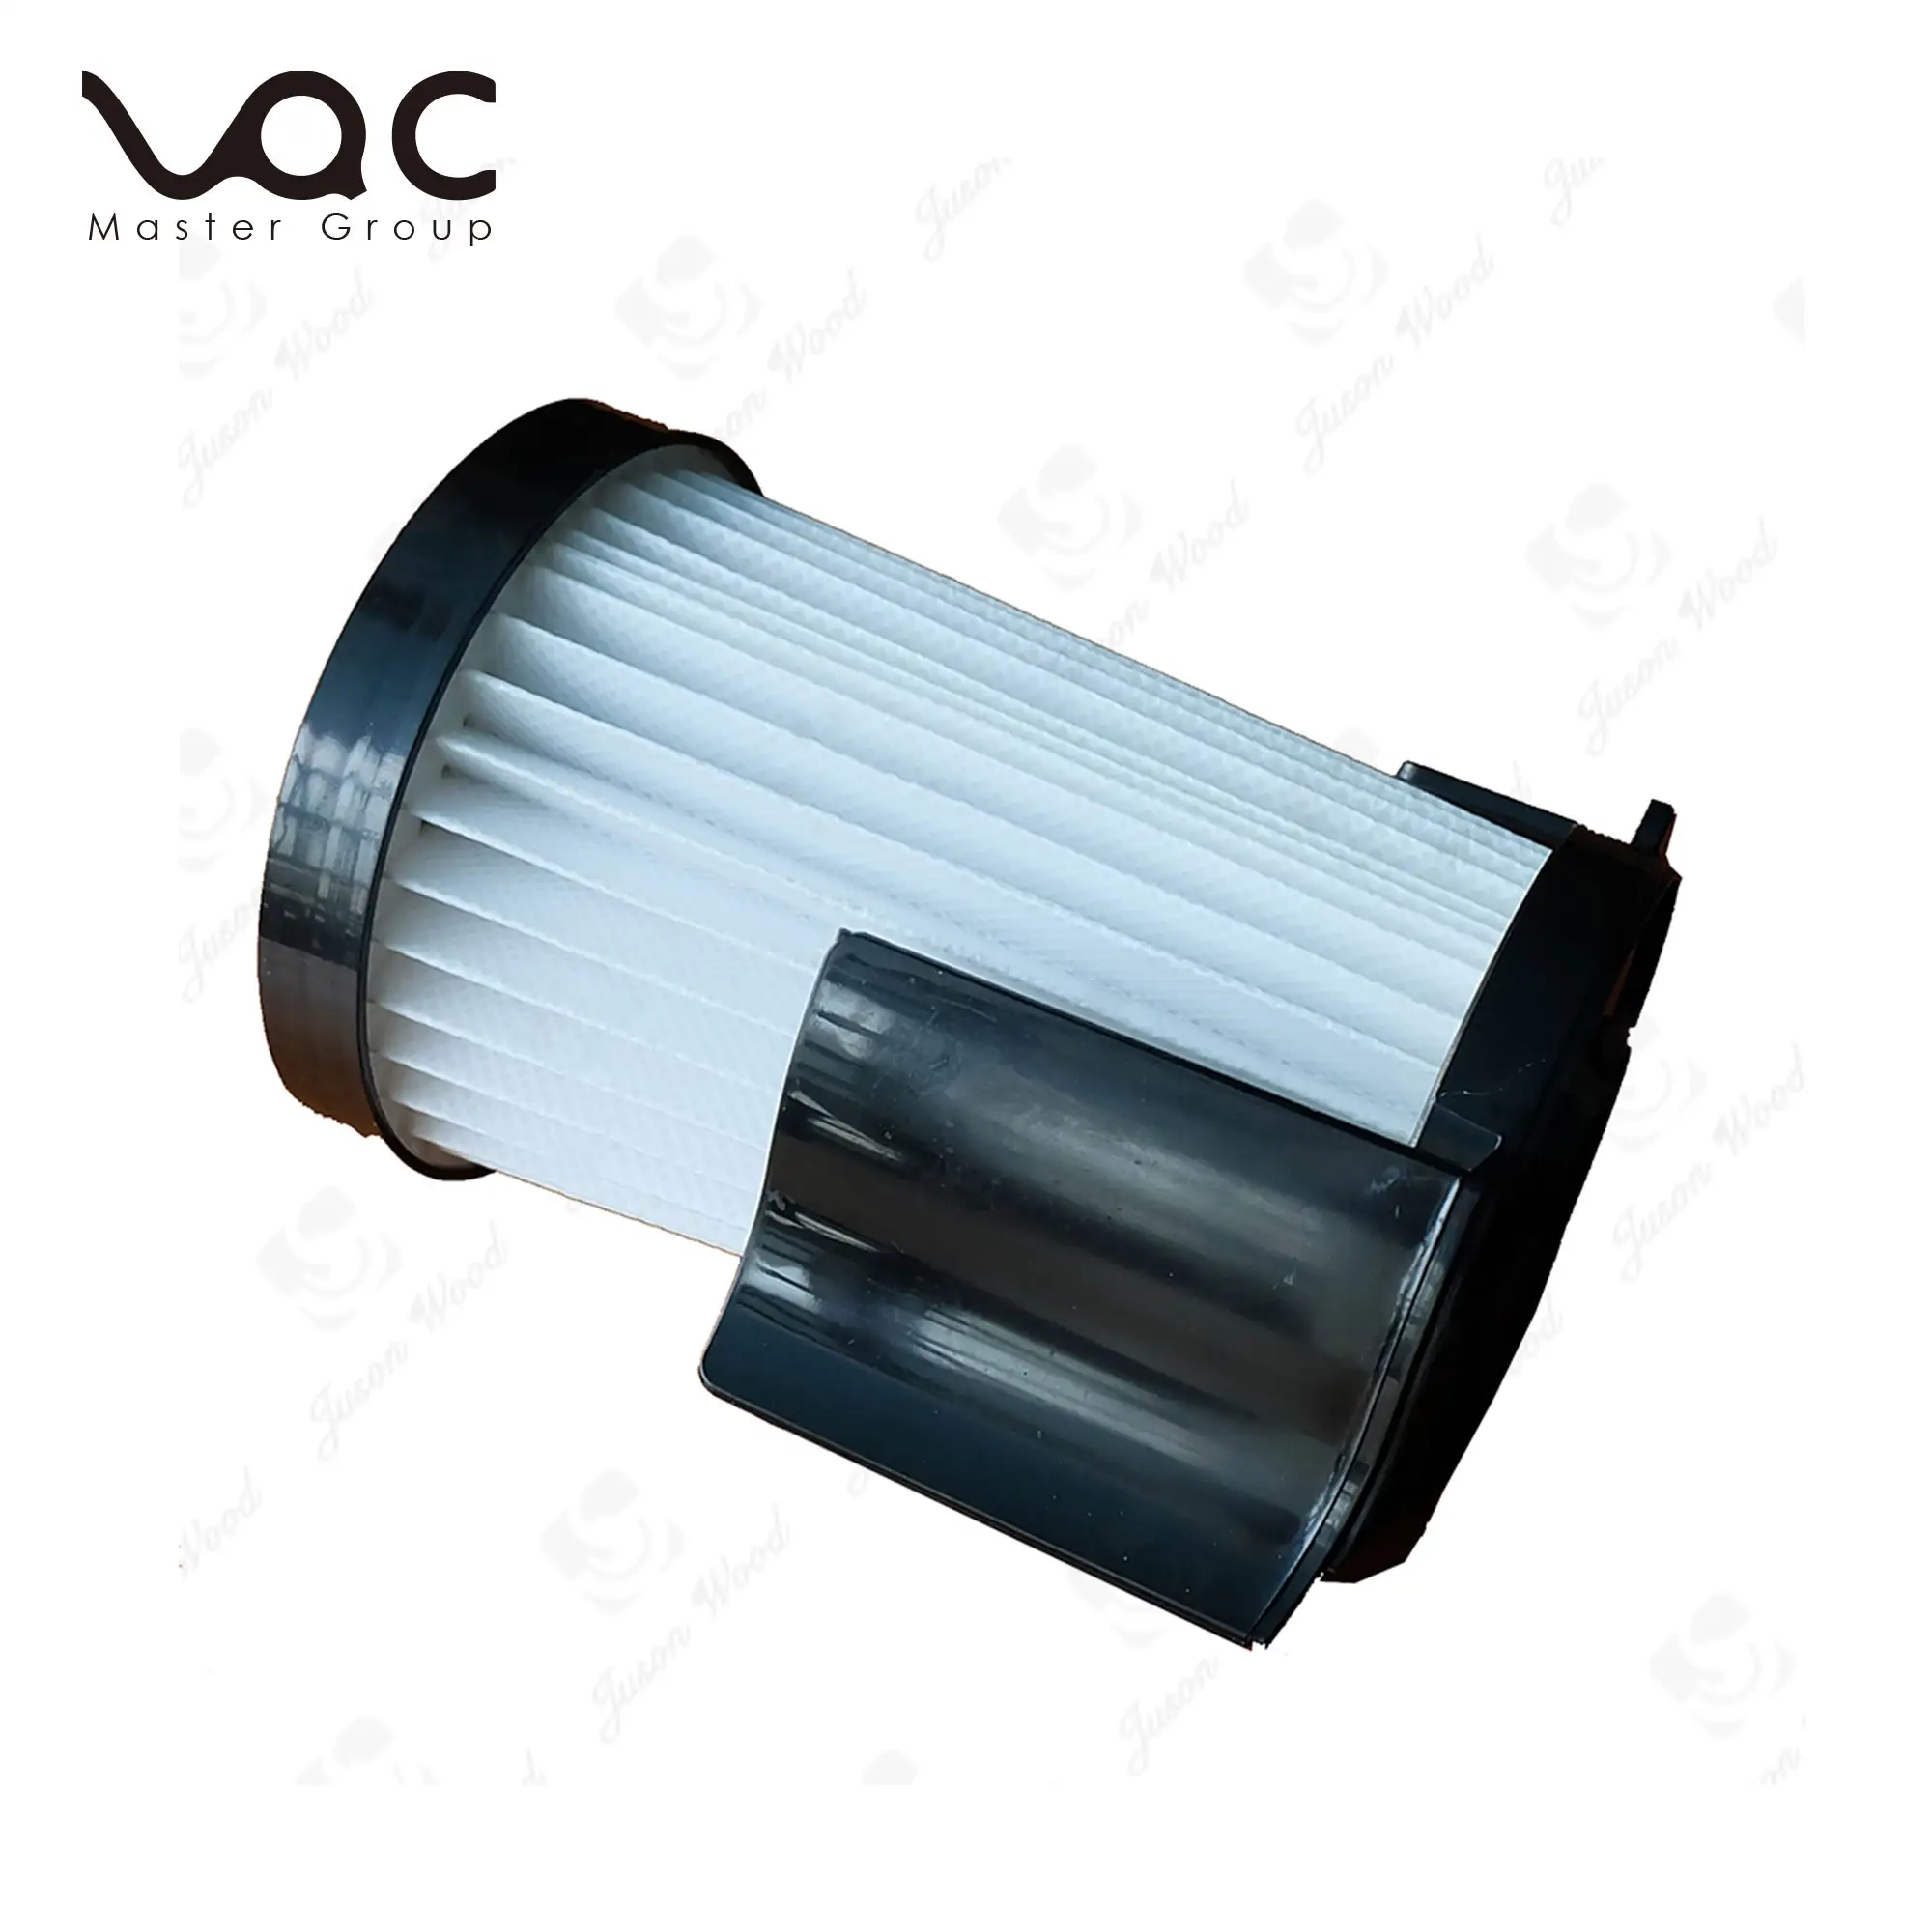 Yedek elektrikli süpürge filtreler Eureka Dcf-4 Dcf-18 63073C, 62132, 63073, 3690, 18505 filtre